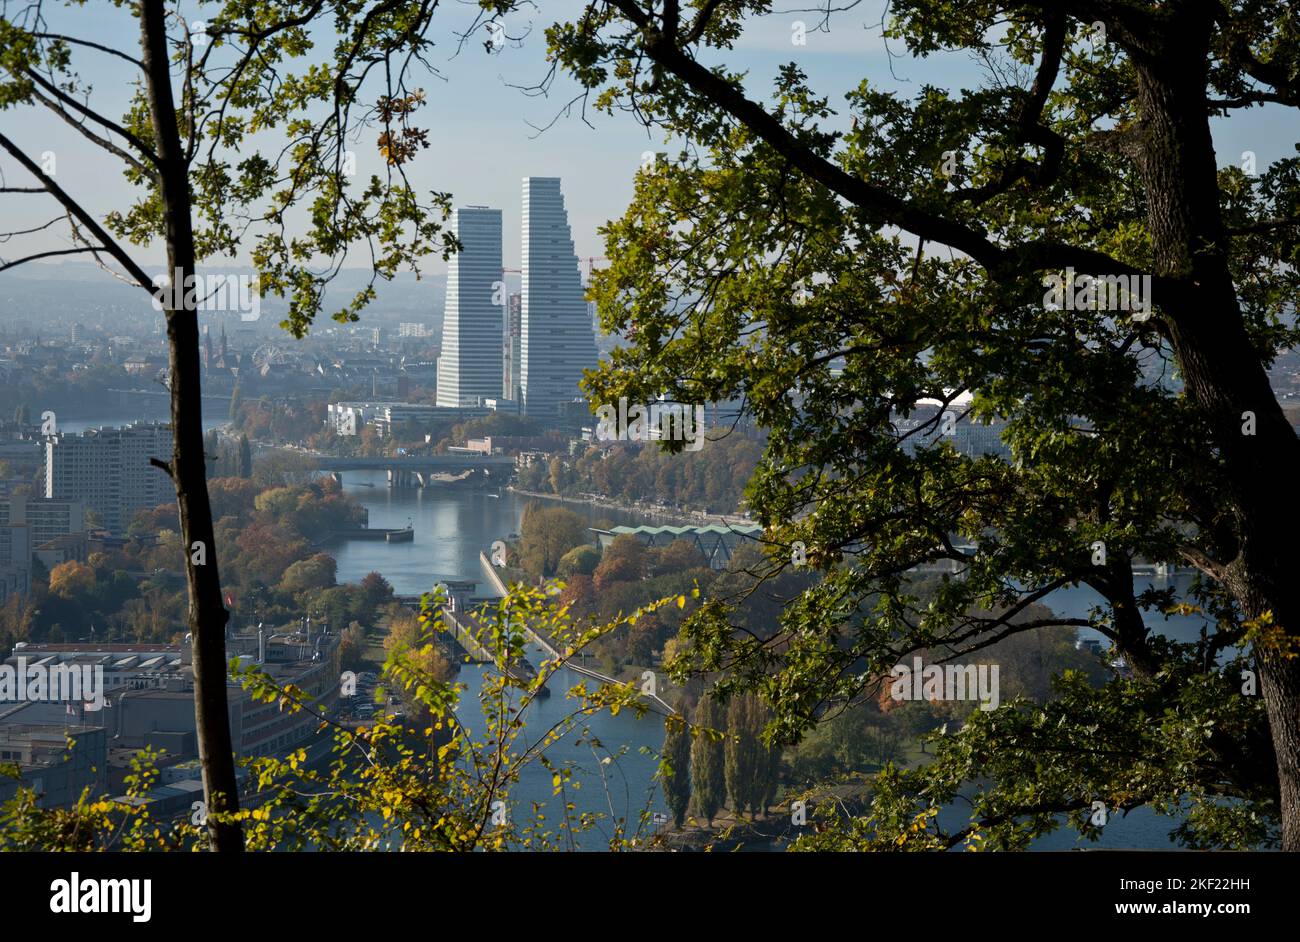 Eindrücklicher Blick vom deutschen Hornfelsen auf die Stadt Basel und die Roche-Türme Stock Photo